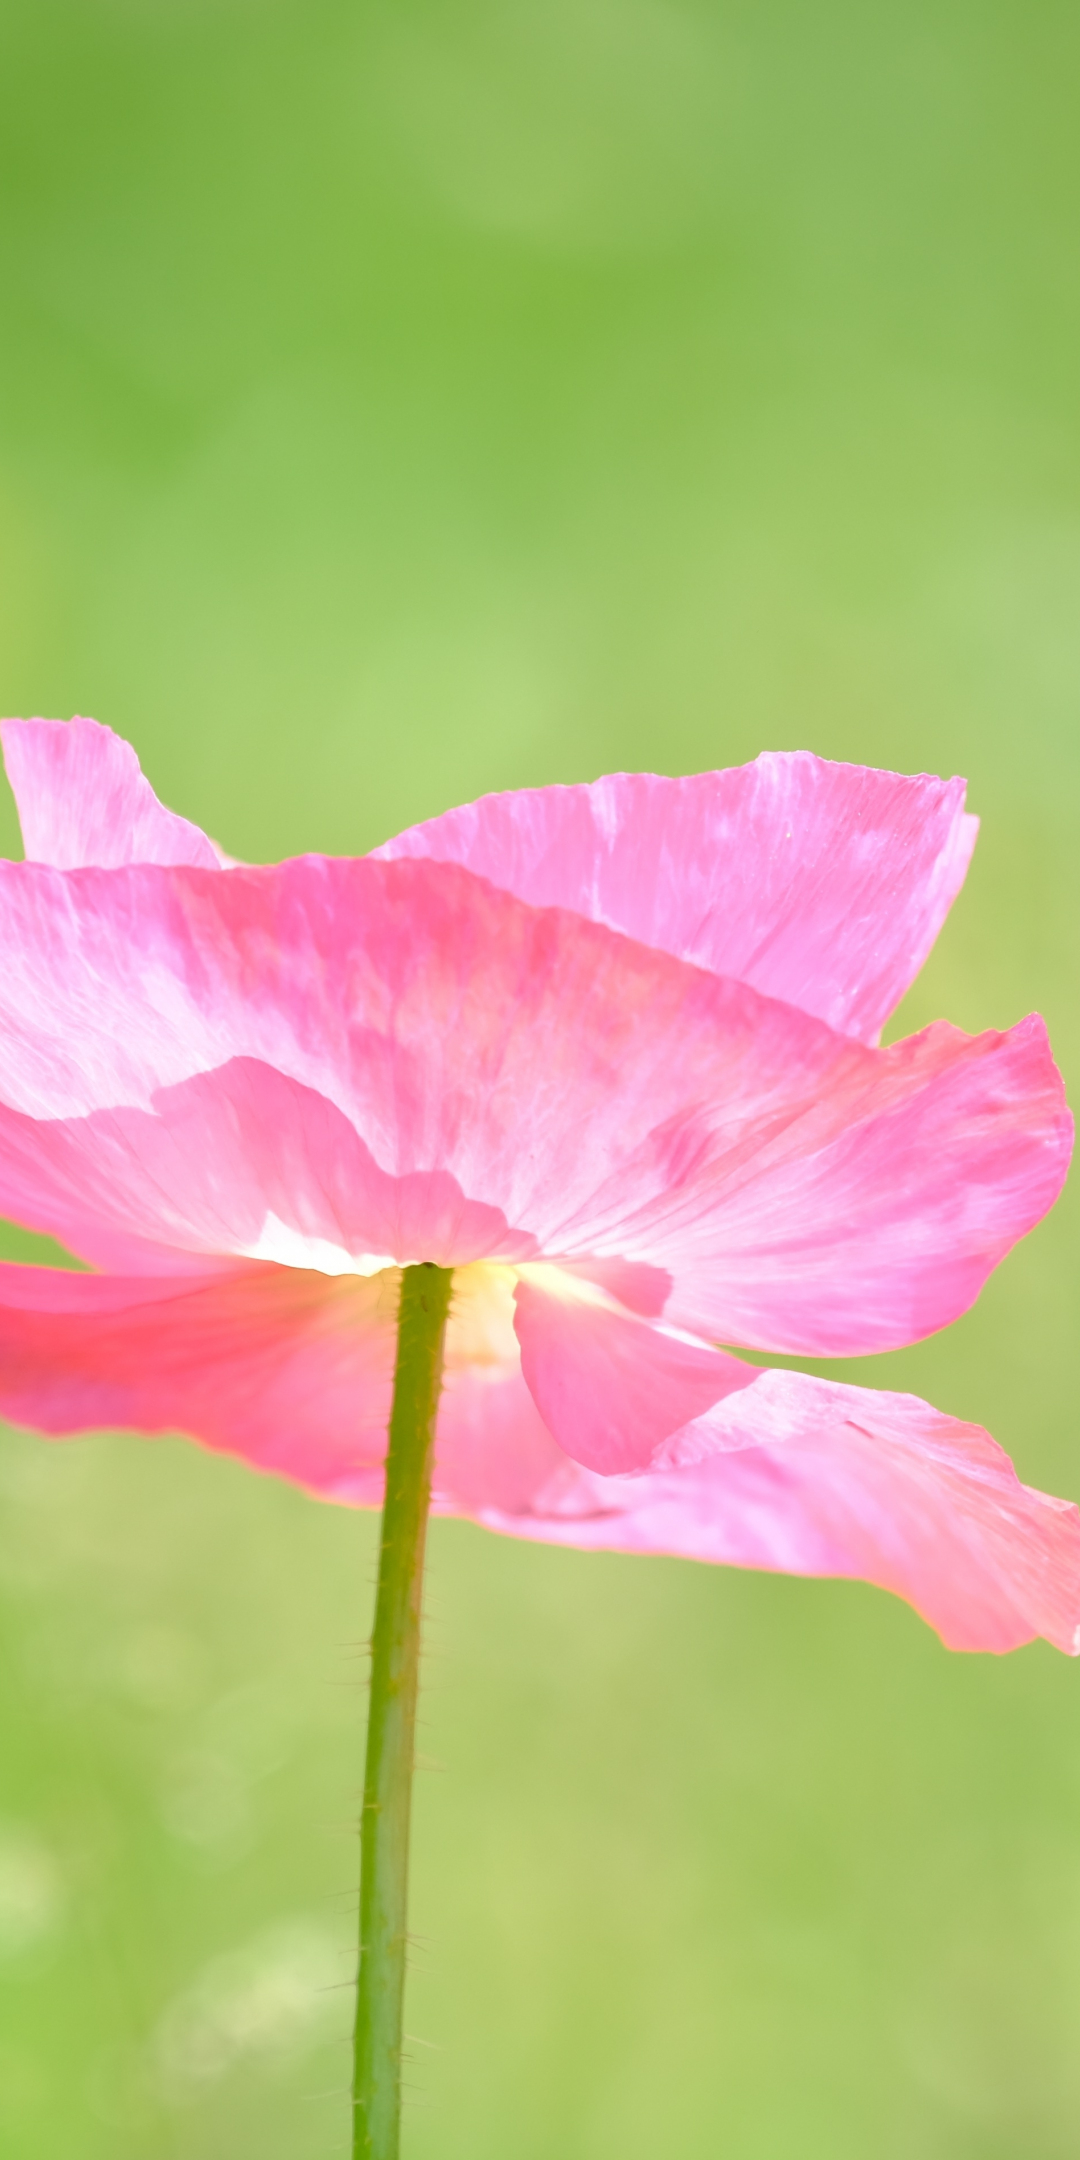 Poppy, a pink flower close up, summer, 1080x2160 wallpaper